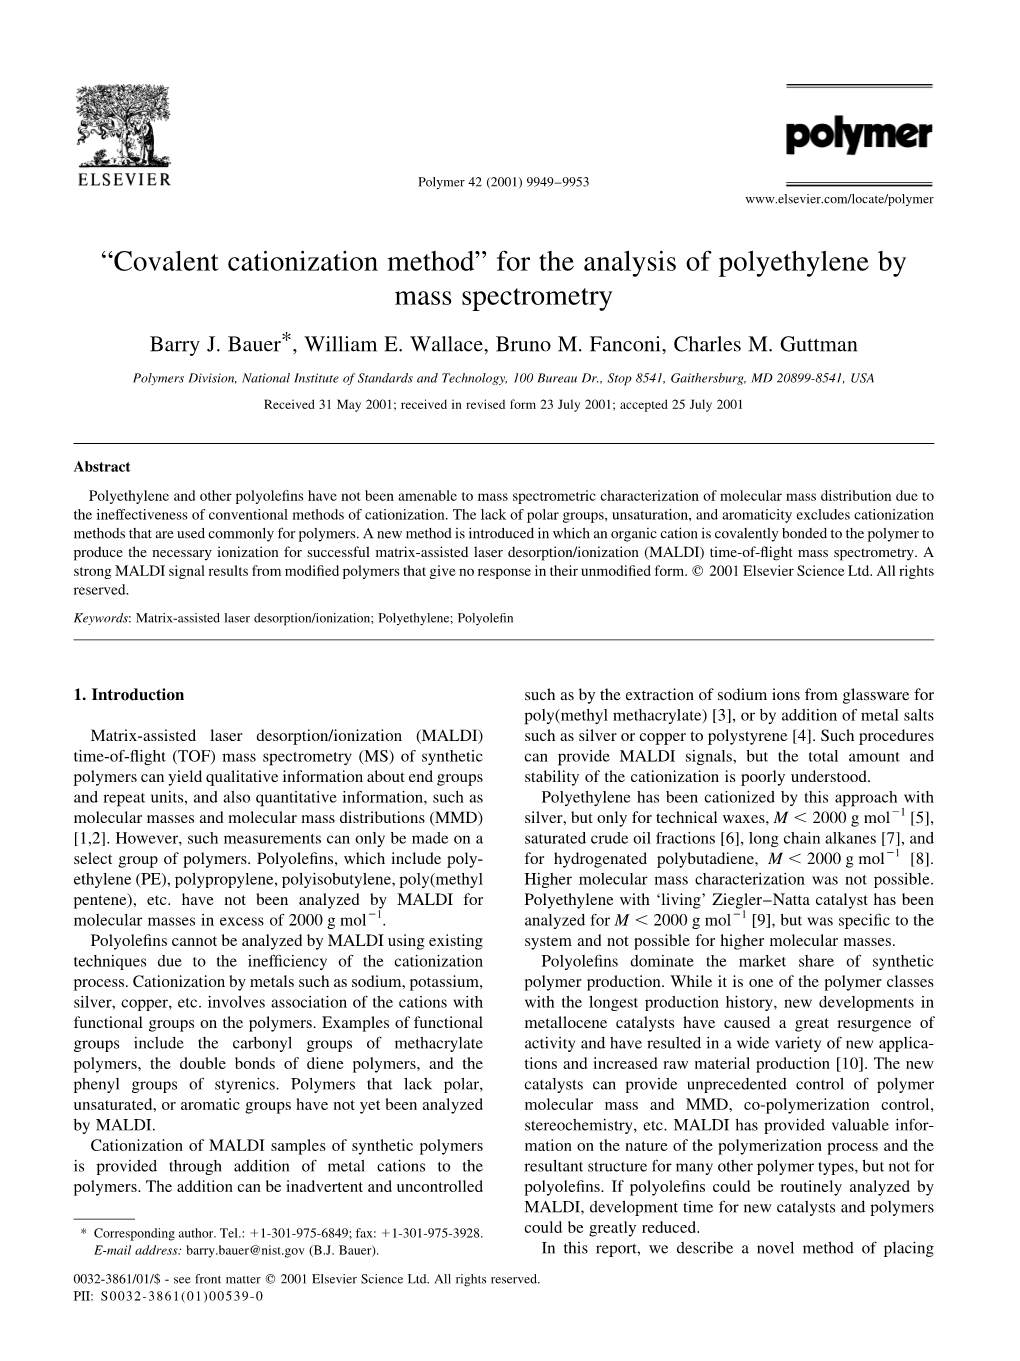 ªcovalent Cationization Methodº for the Analysis of Polyethylene by Mass Spectrometry